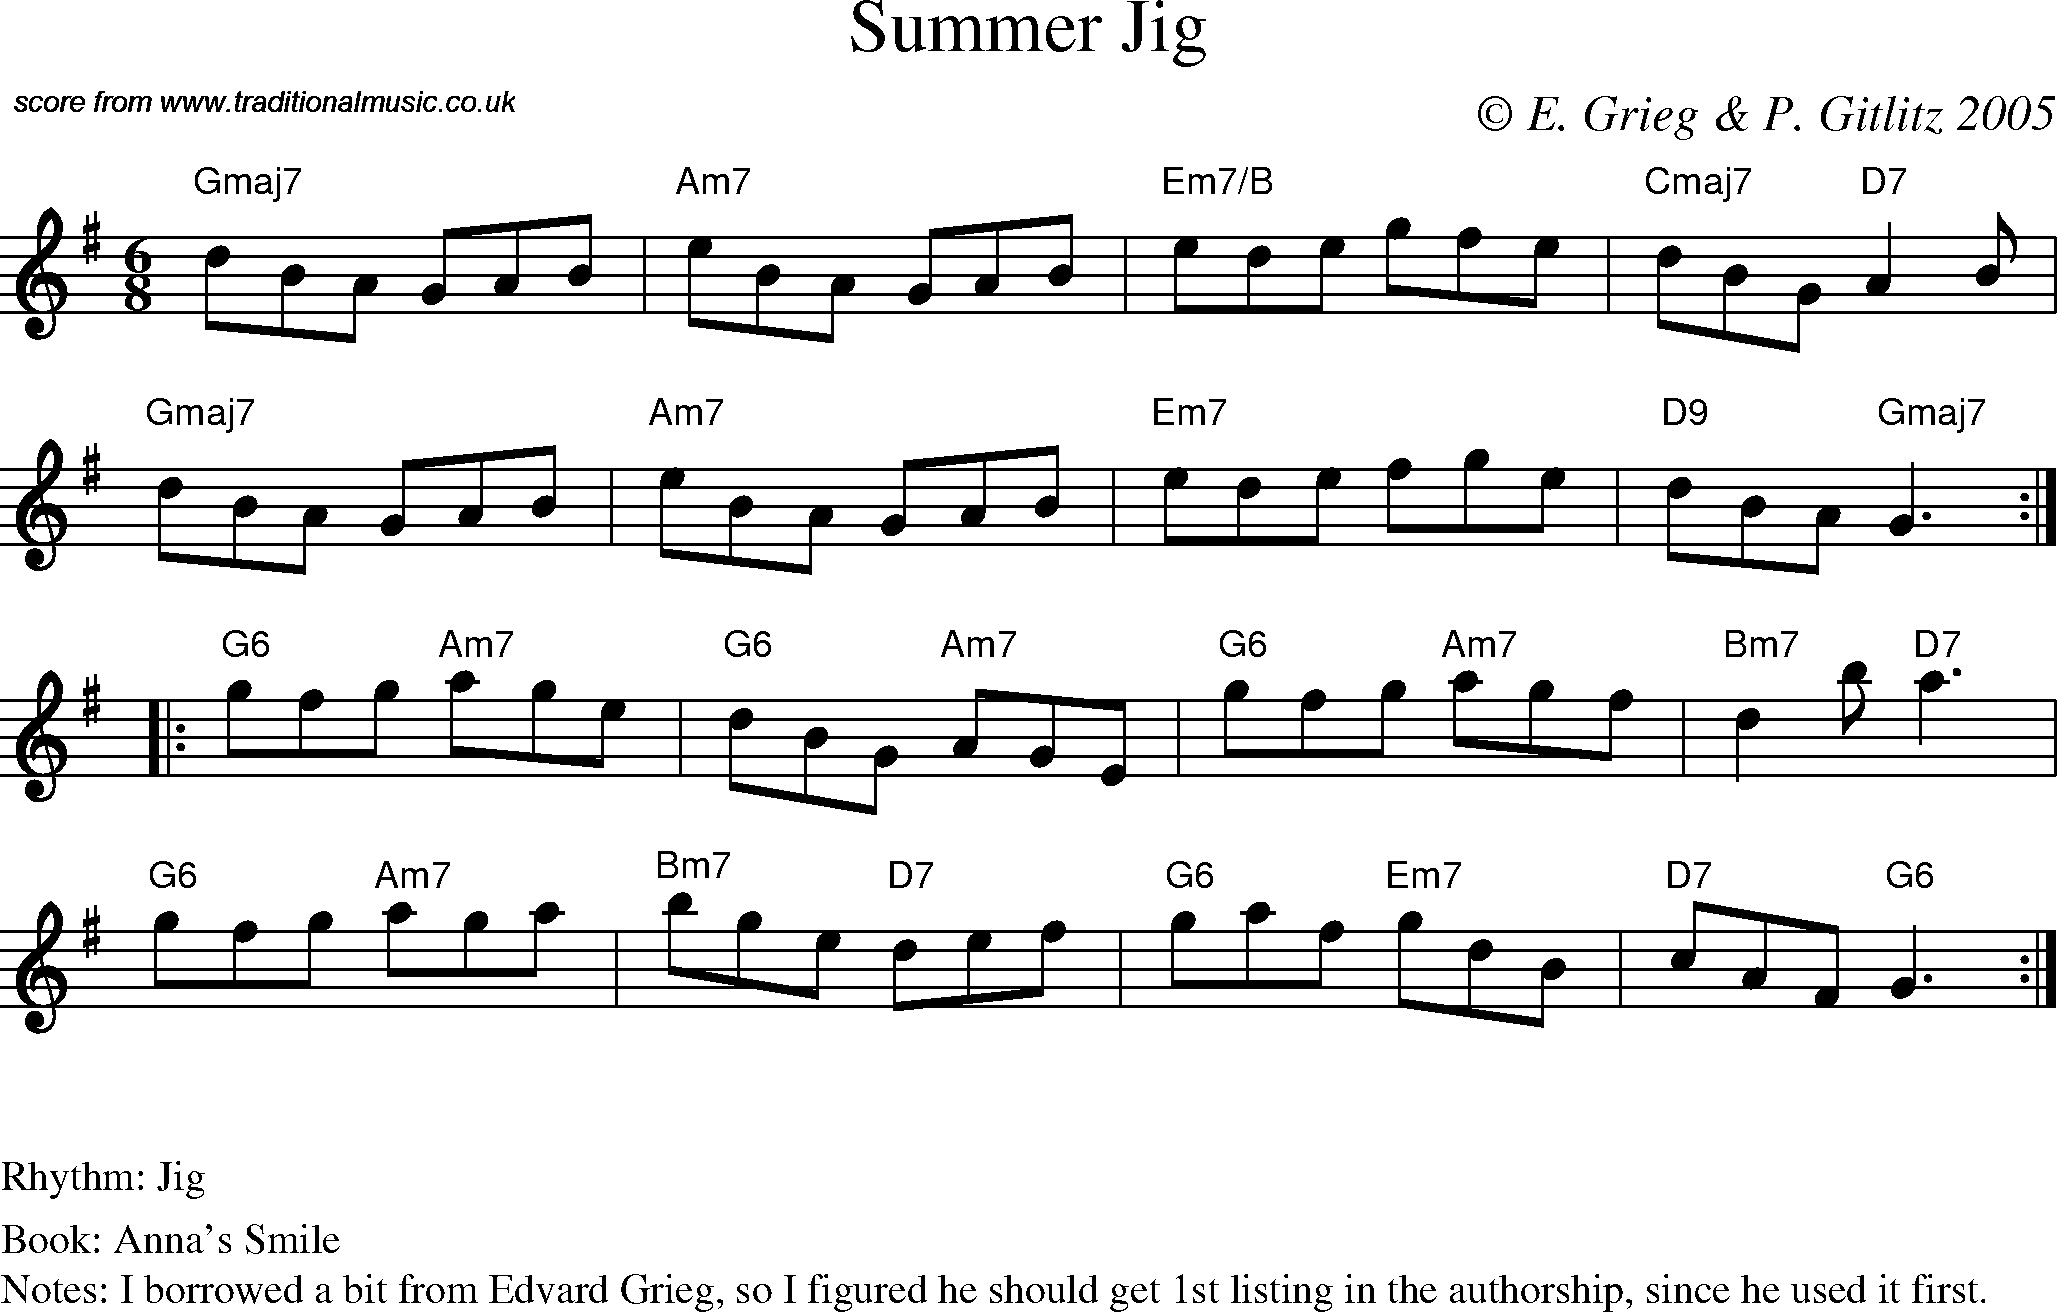 Sheet Music Score for Jig - Summer Jig